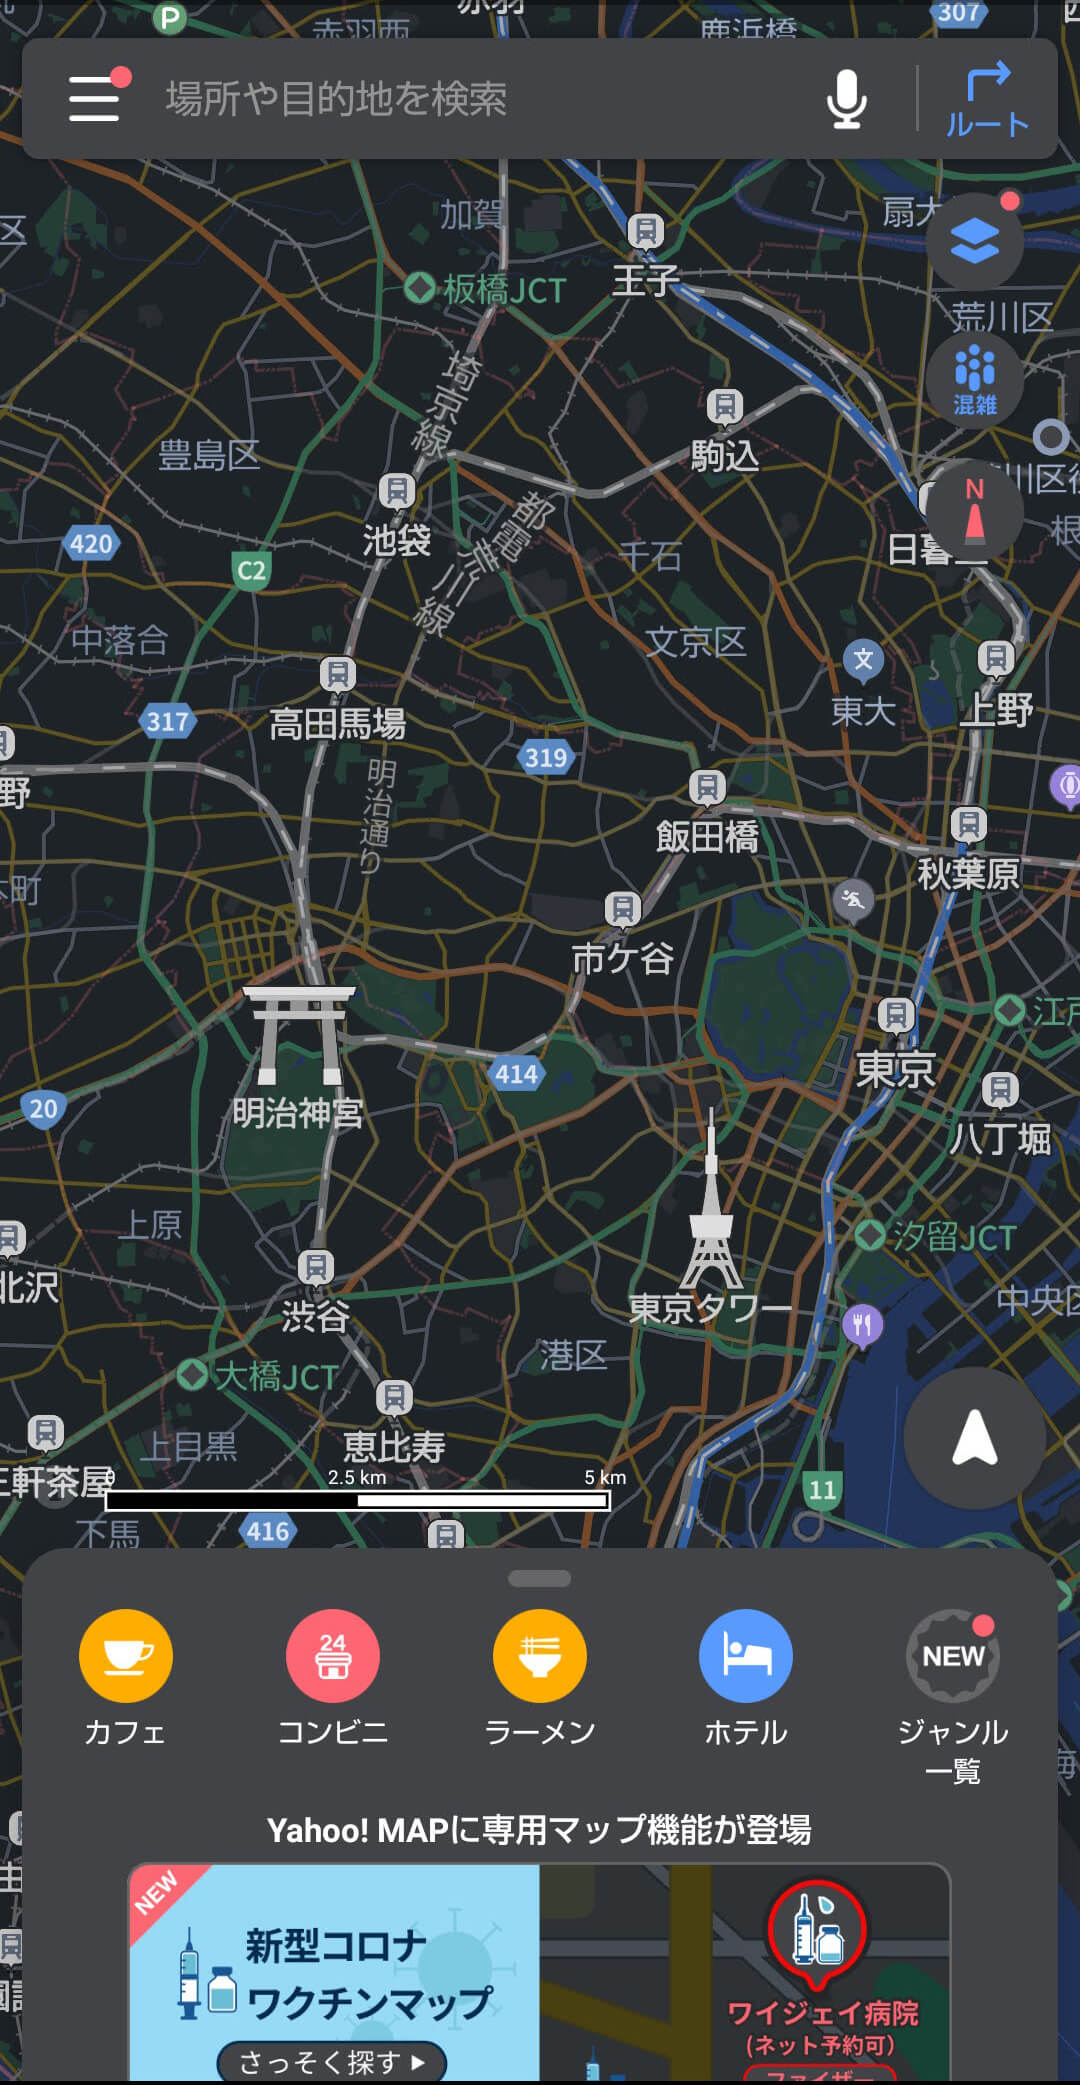 Yahoo! MAPのスクショ画像